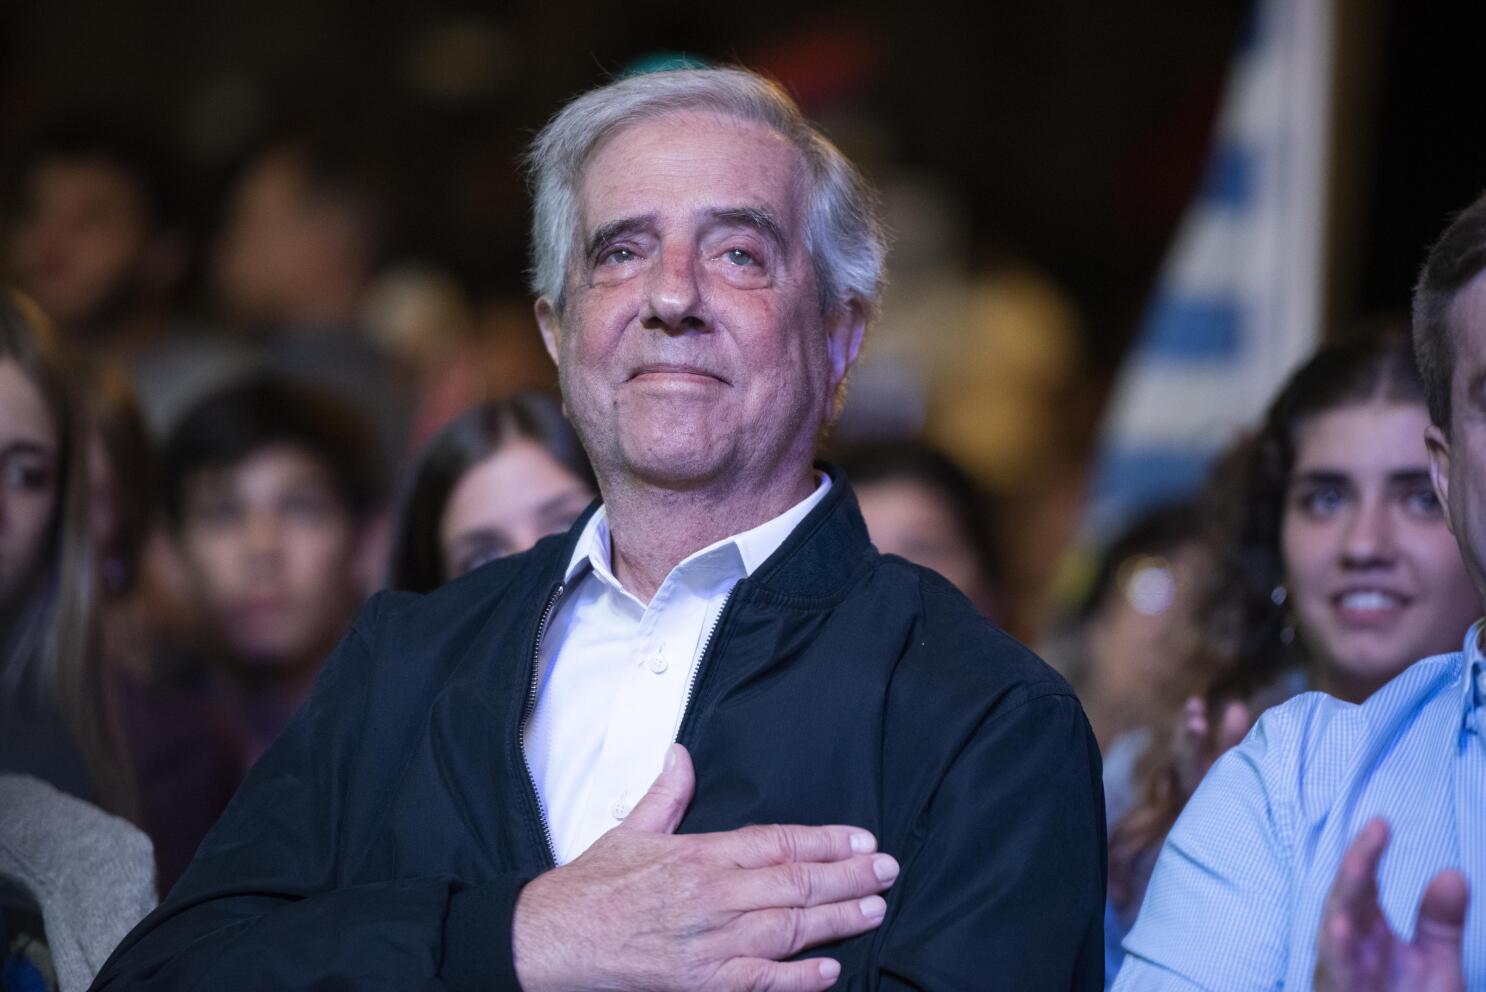 Se suspende el clásico uruguayo por la muerte de Tabaré Vázquez - Diario Hoy  En la noticia